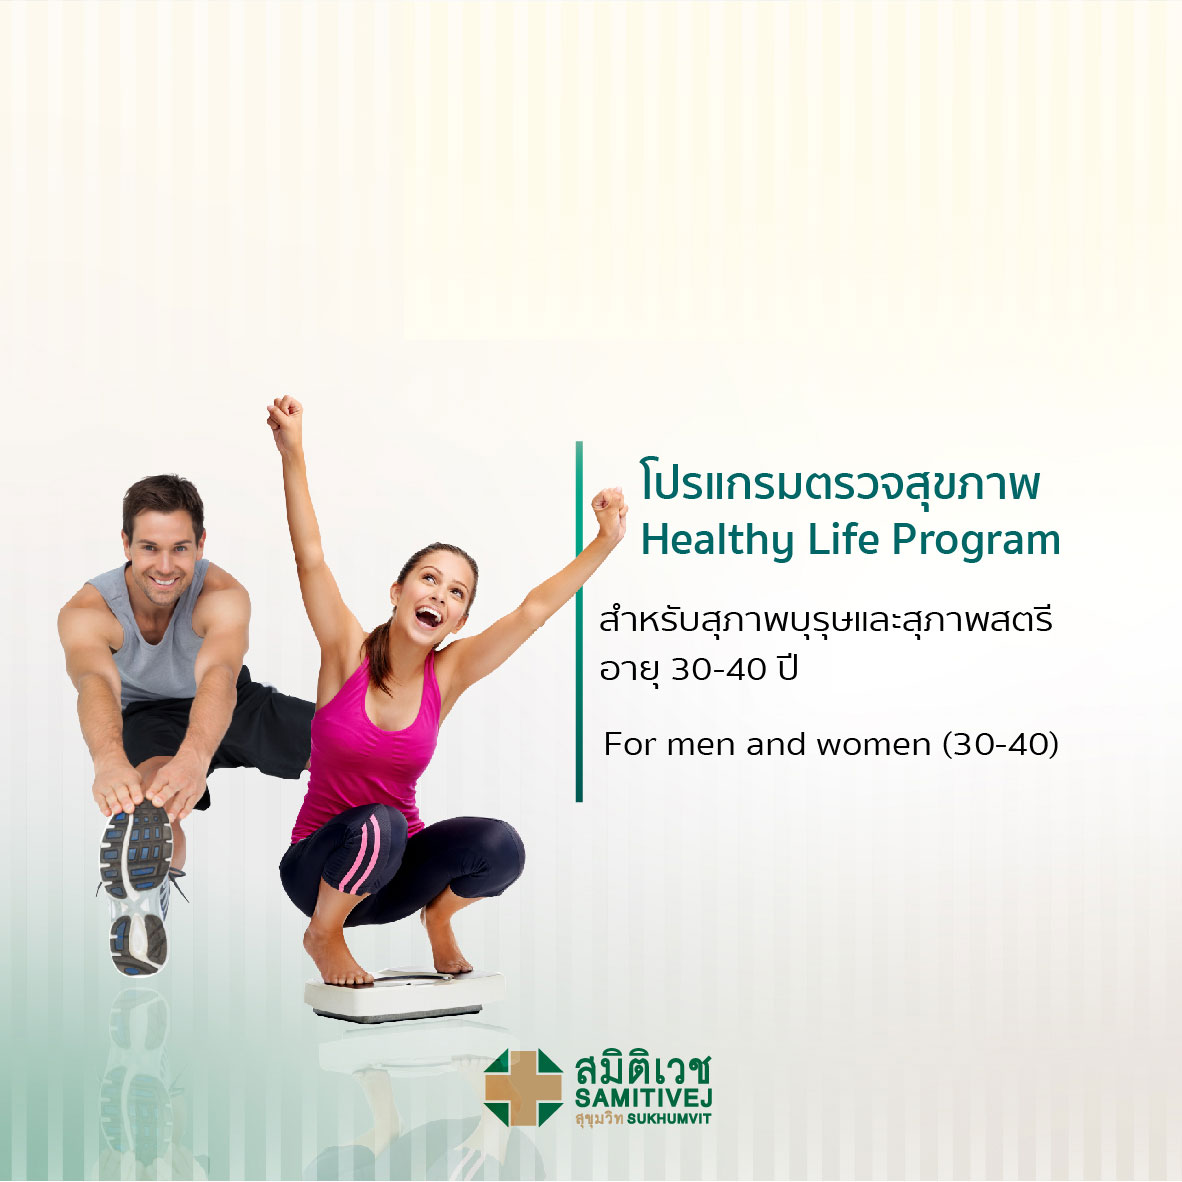 ตรวจสุขภาพเริ่มต้น (สุภาพบุรุษ 30 - 40 ปี) Healthy Life Program - สมิติเวชสุขุมวิท